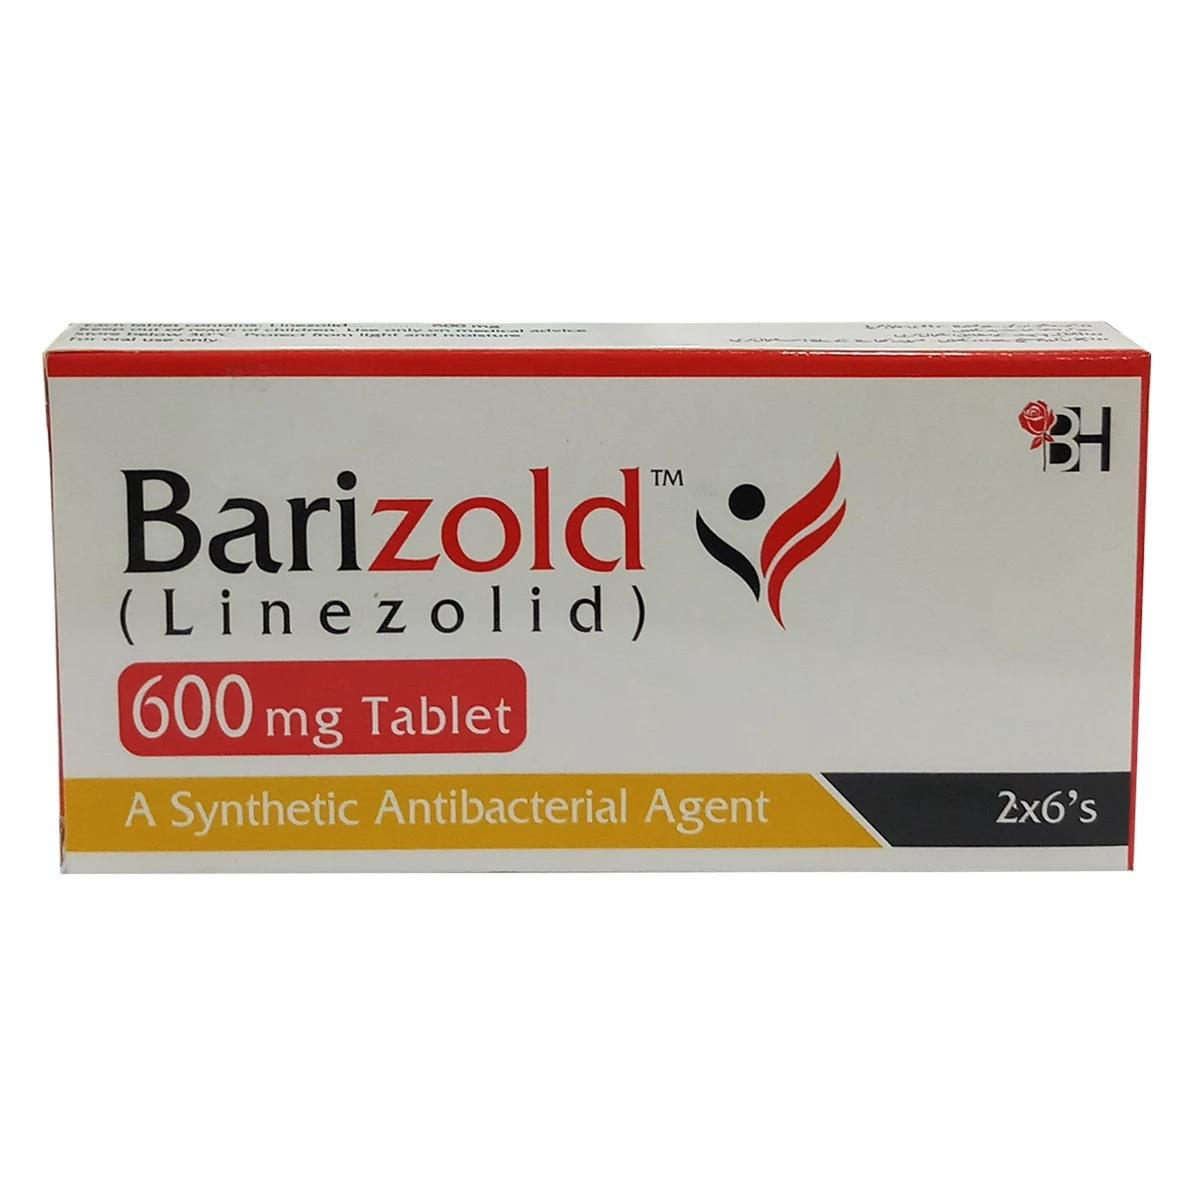 Barizold 600mg Tablet